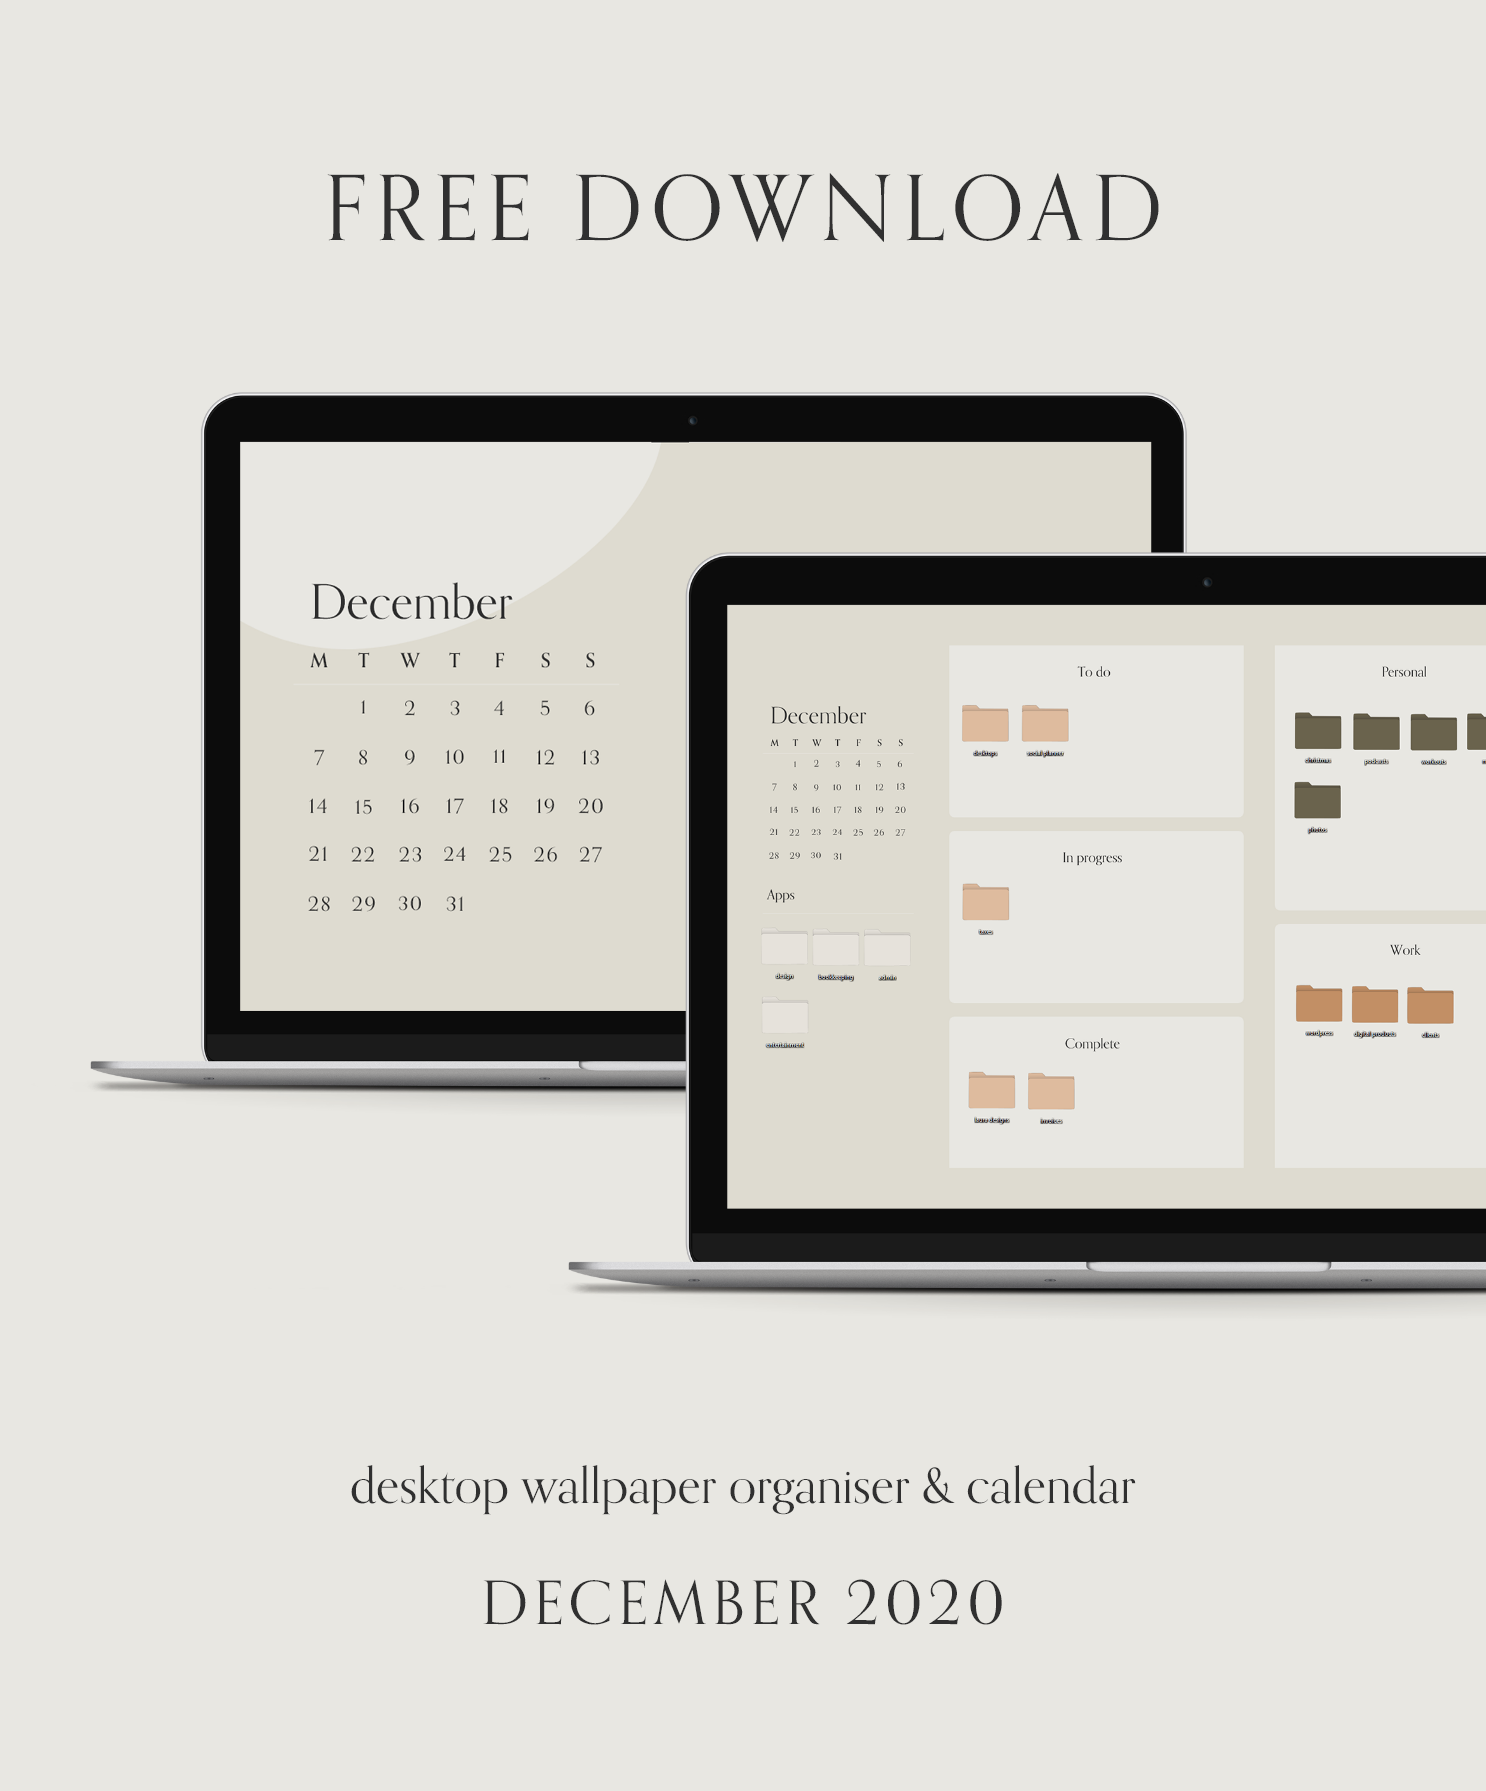 Free desktop wallpaper | organiser & calendar